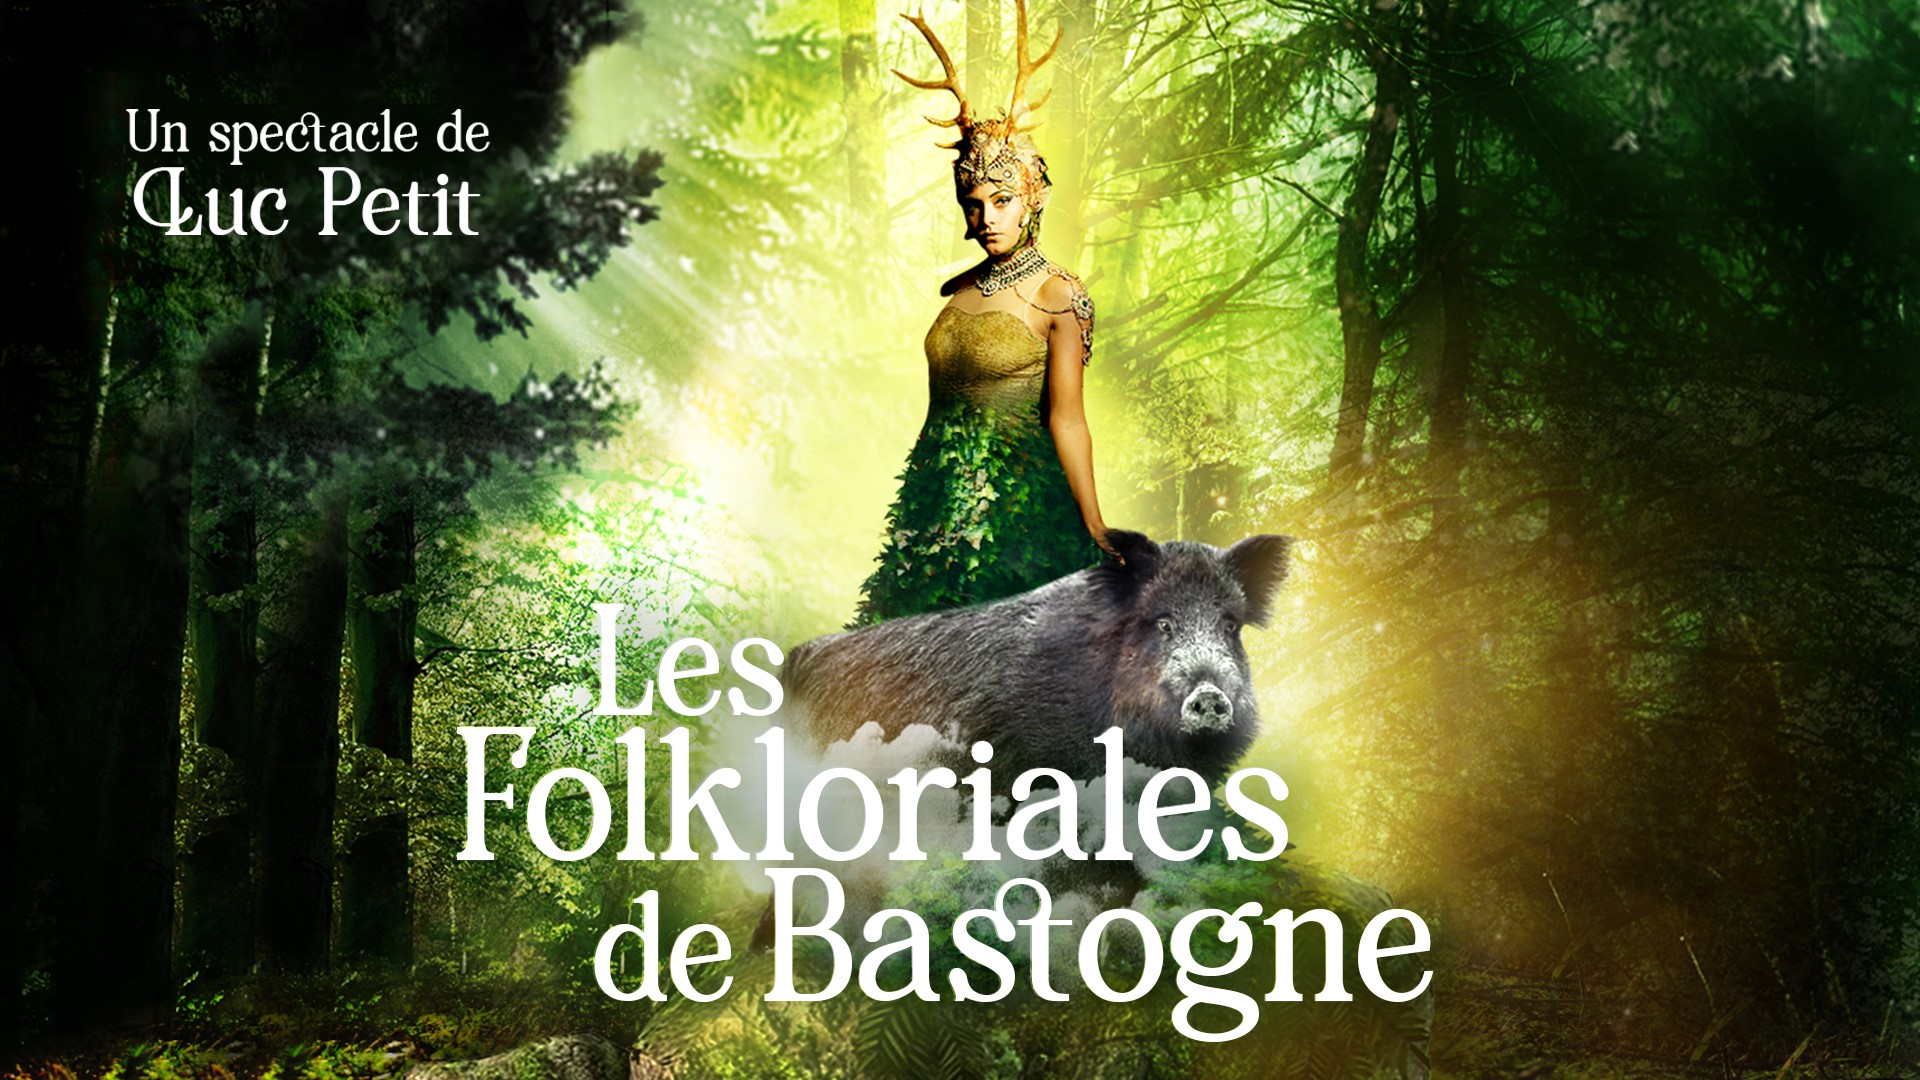 Folkloriales-bastogne